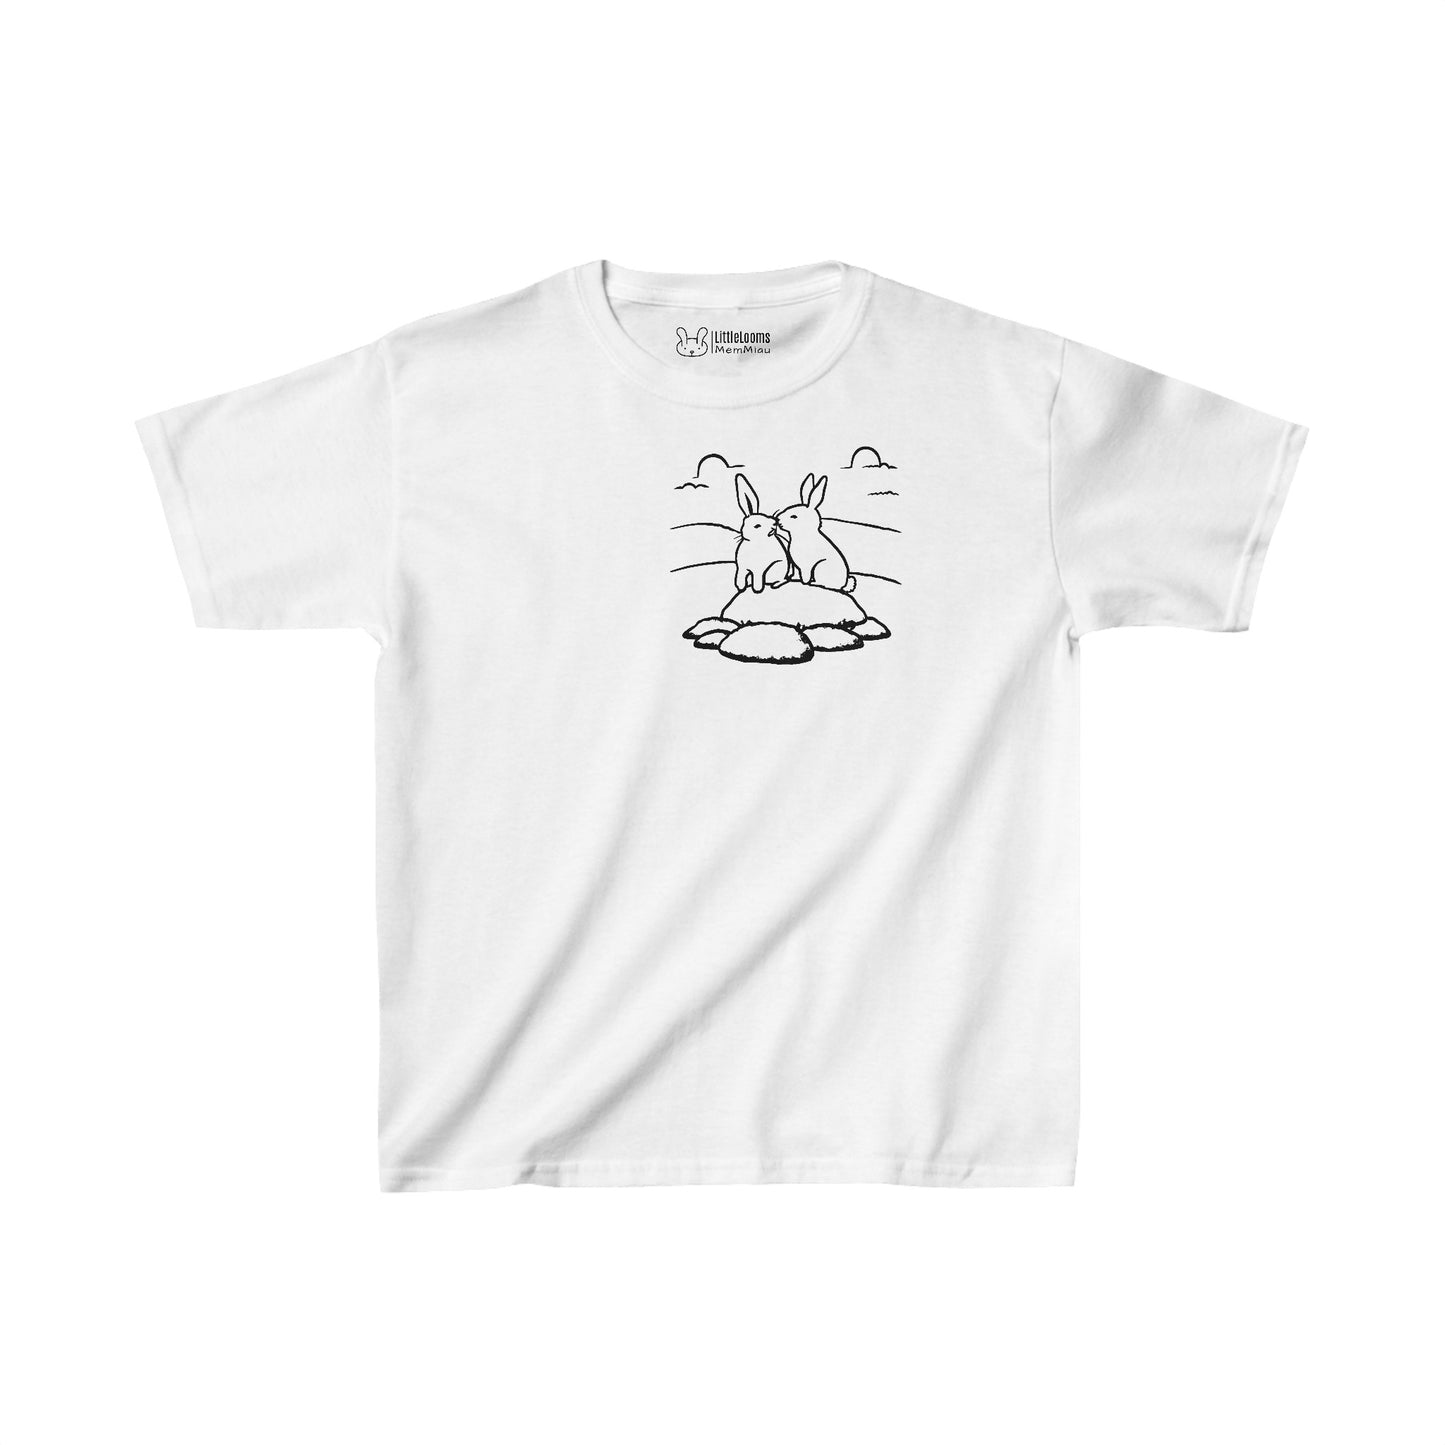 Kurzarm-T-Shirt mit zwei Hasen-Design (Taschenstil)